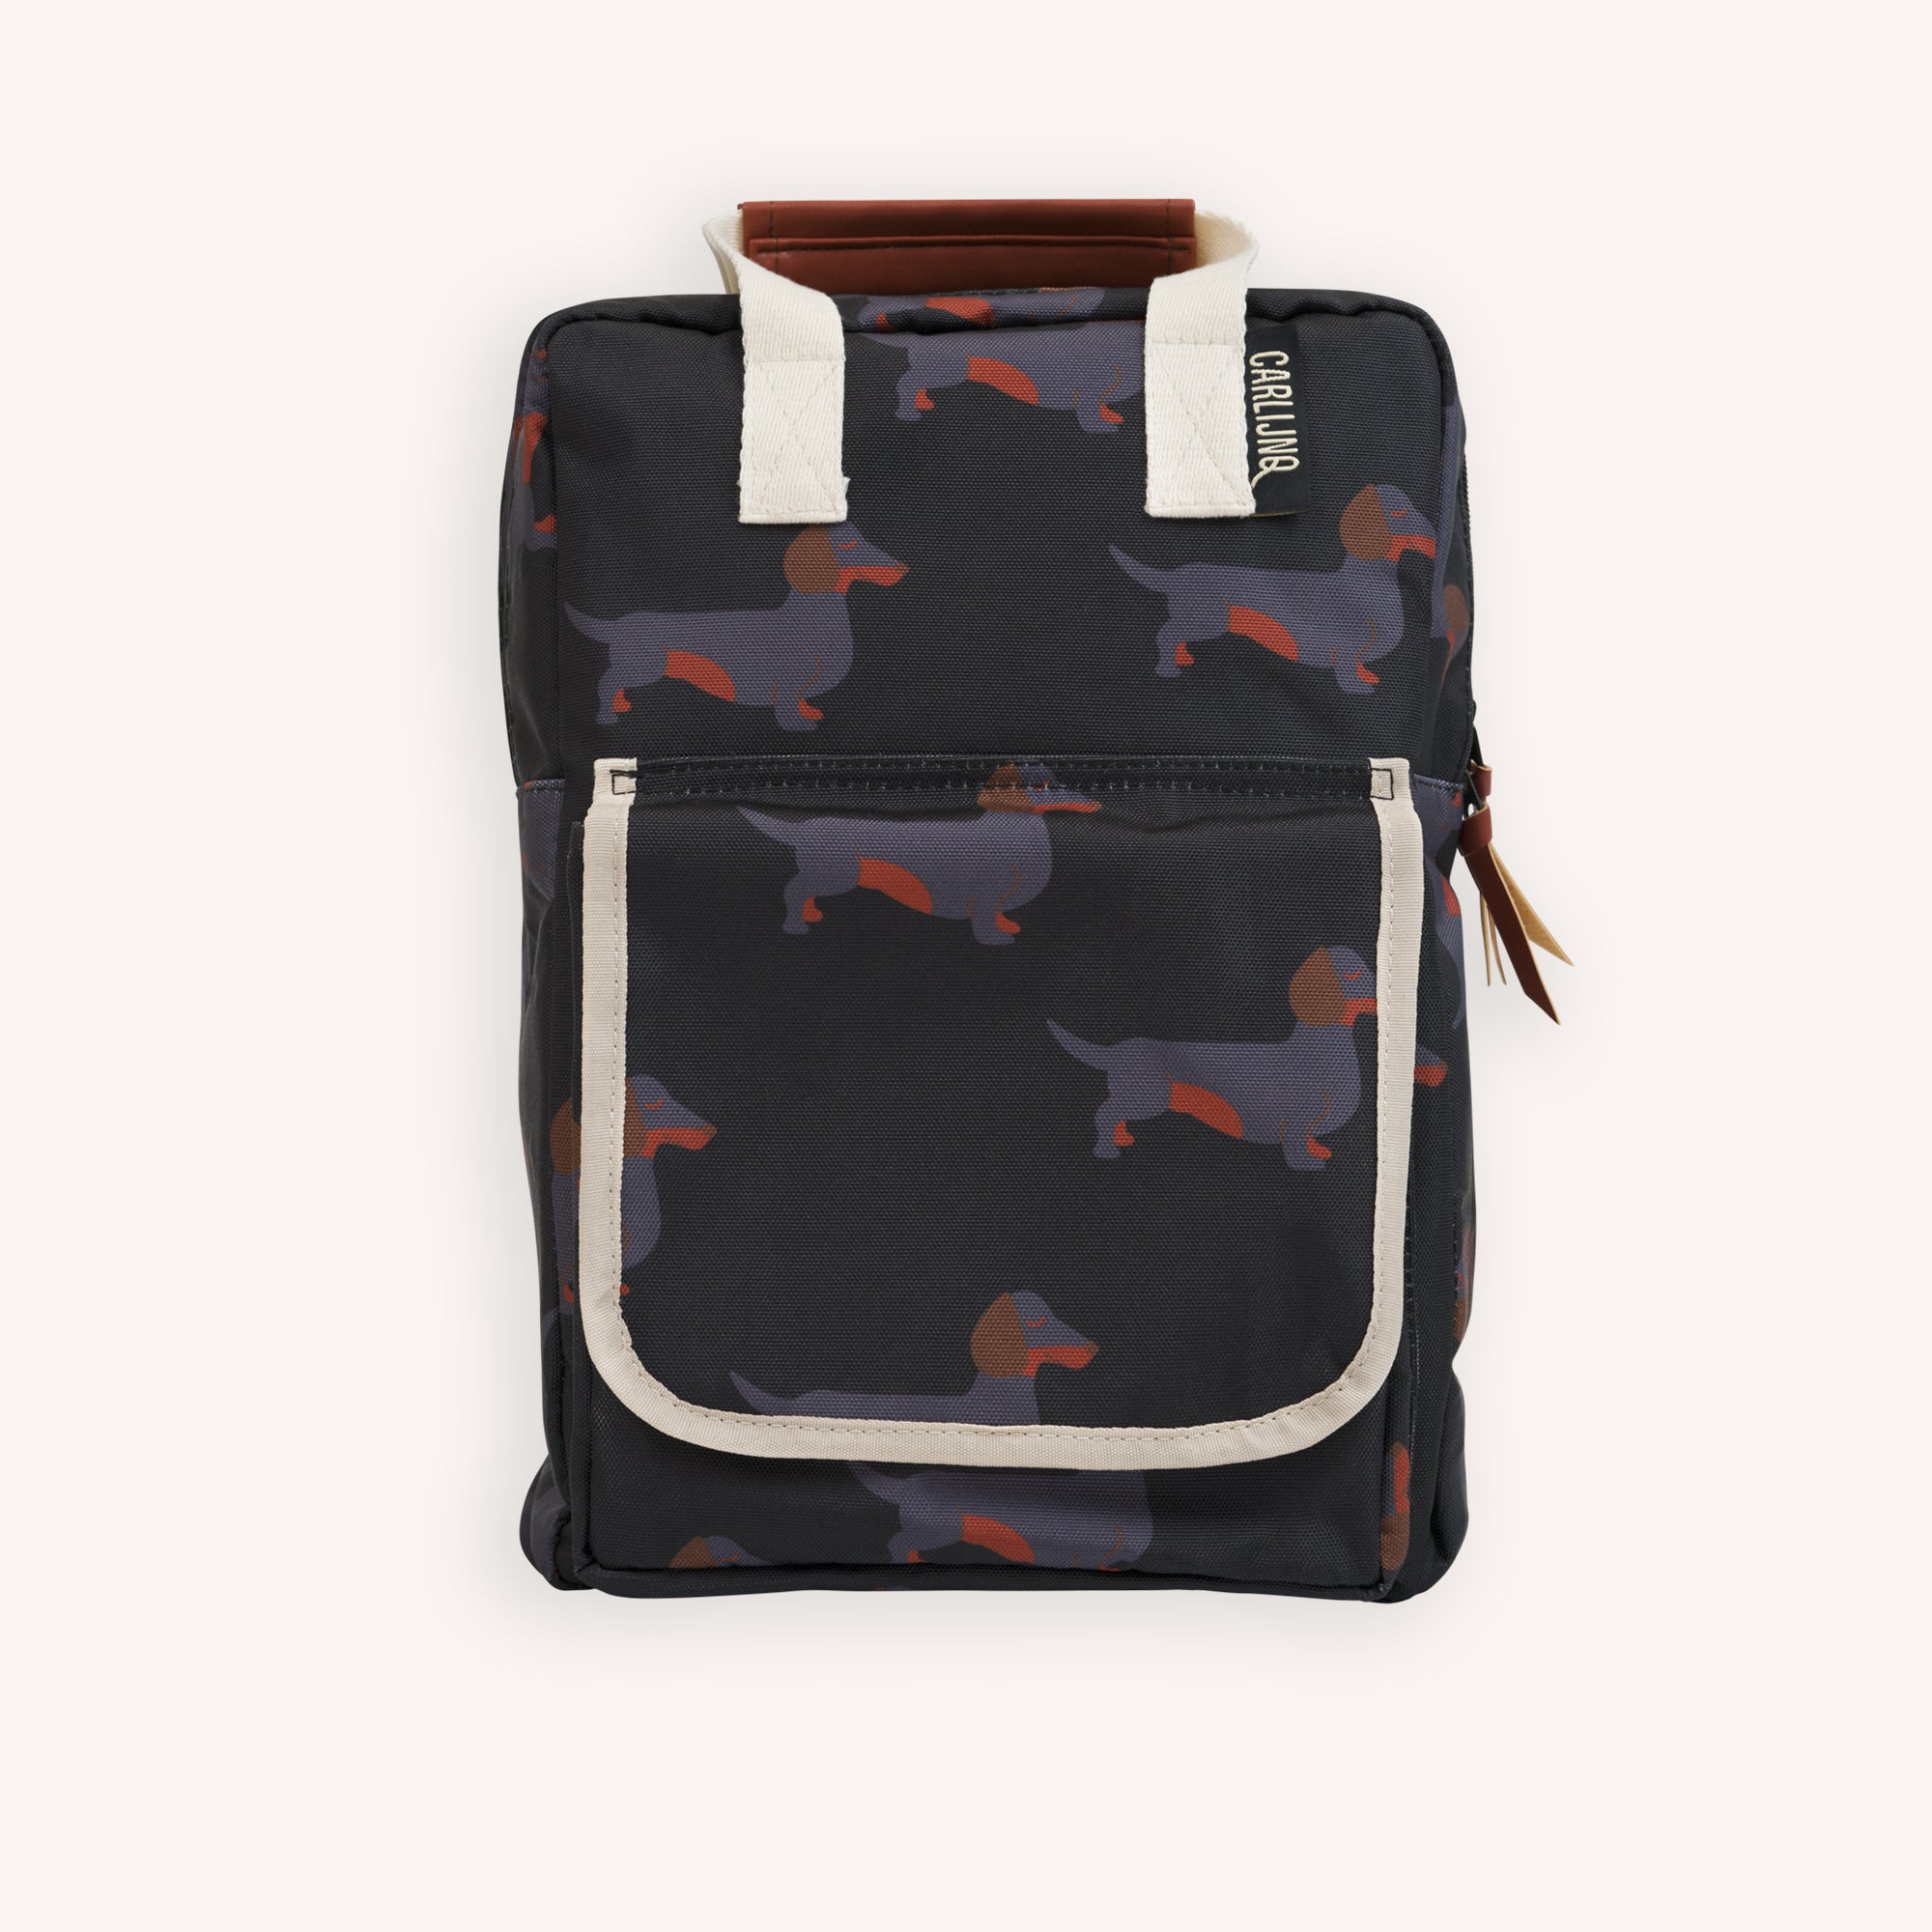 Dachshund - backpack